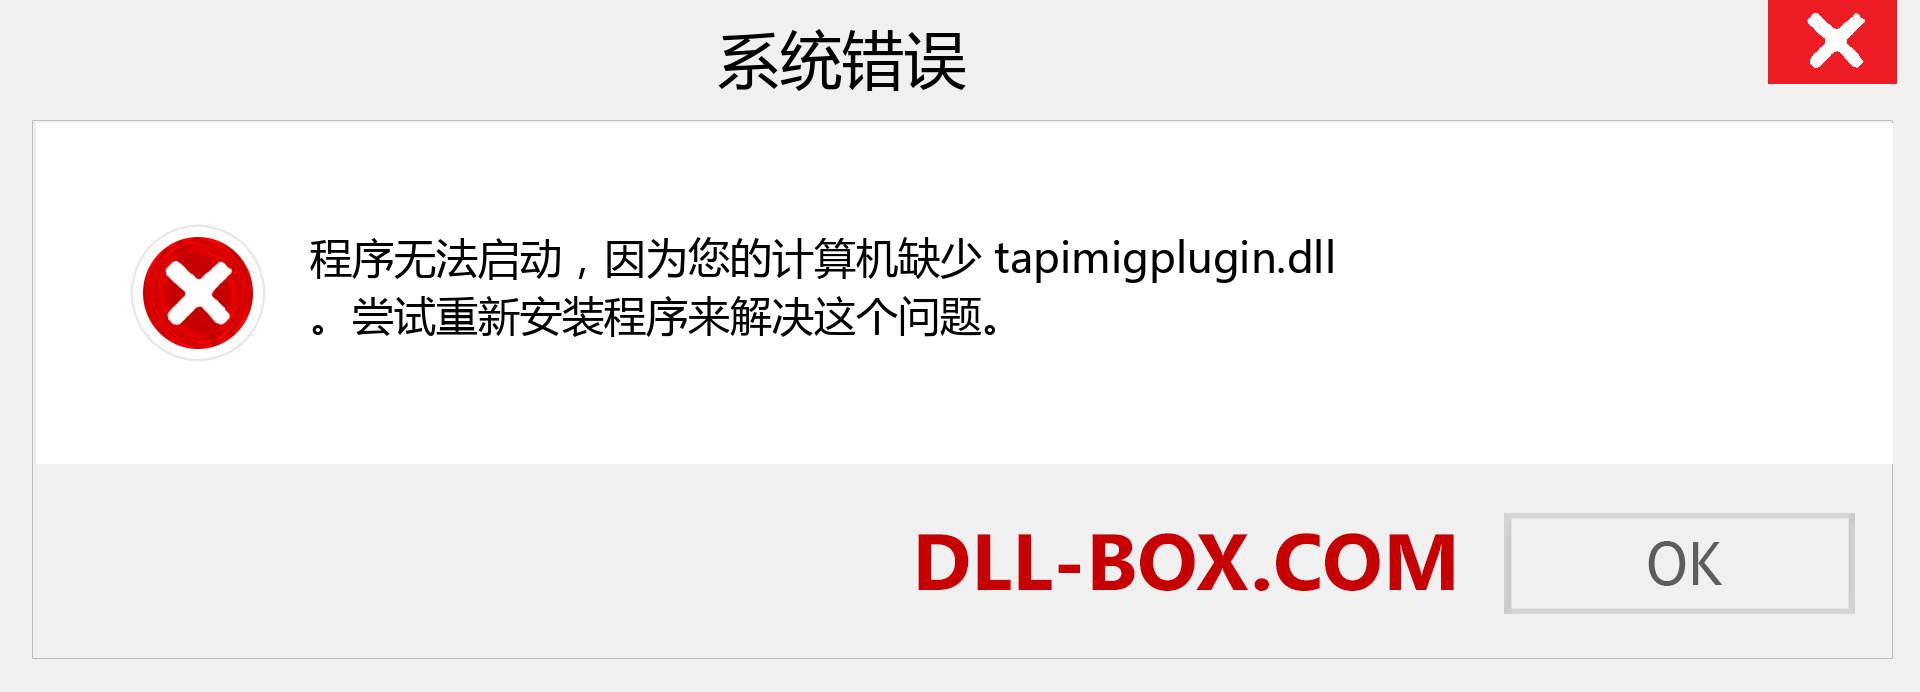 tapimigplugin.dll 文件丢失？。 适用于 Windows 7、8、10 的下载 - 修复 Windows、照片、图像上的 tapimigplugin dll 丢失错误